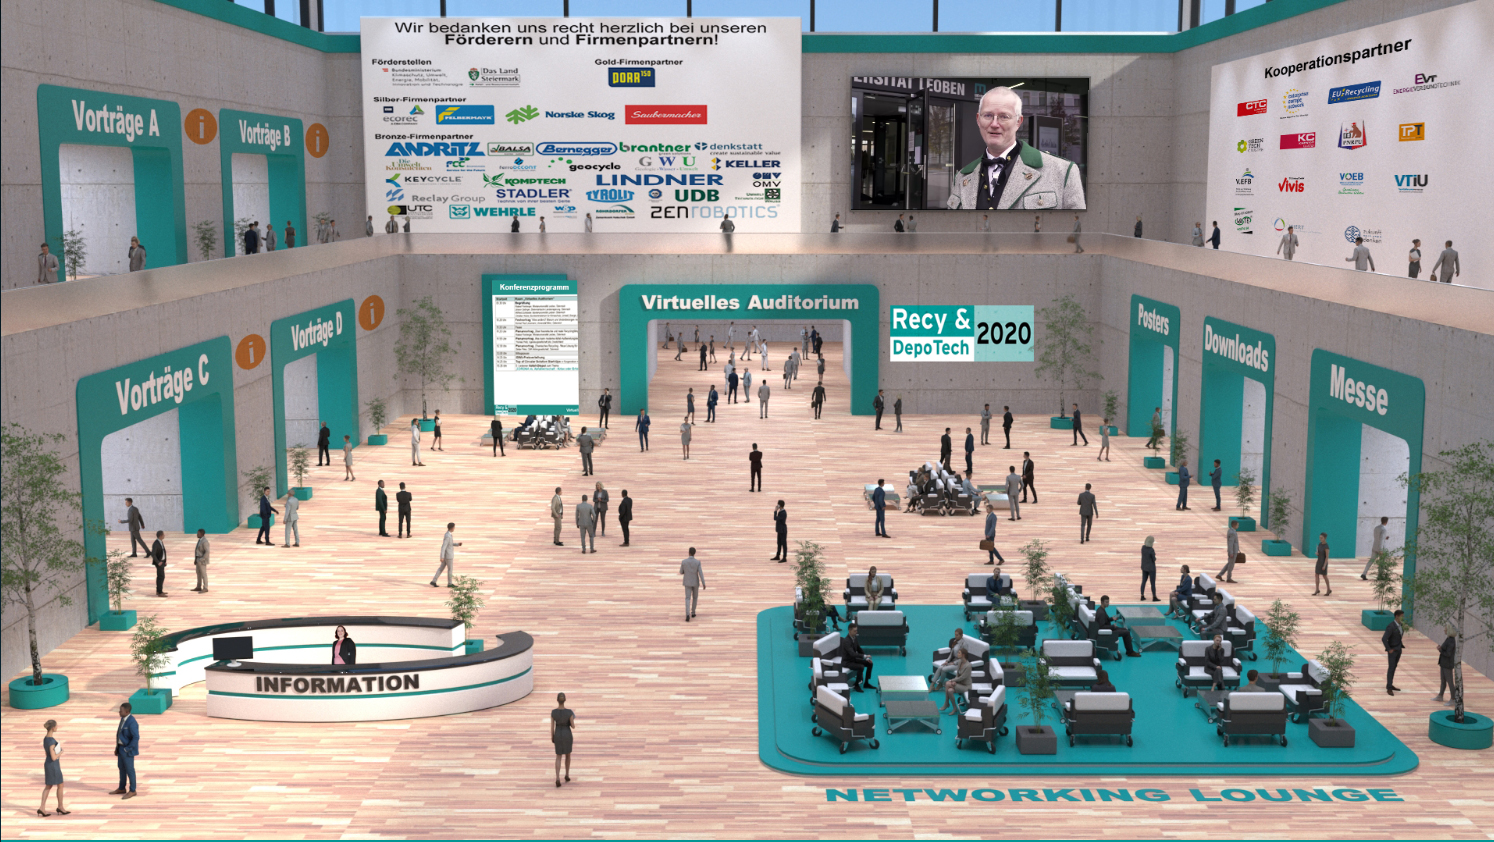 Grafik des virtuellen Konferenzzentrums mit Zugang zu u. a. Vortragssälen, einer Networking Lounge, der Posterausstellung und der Messe für Firmenpartner